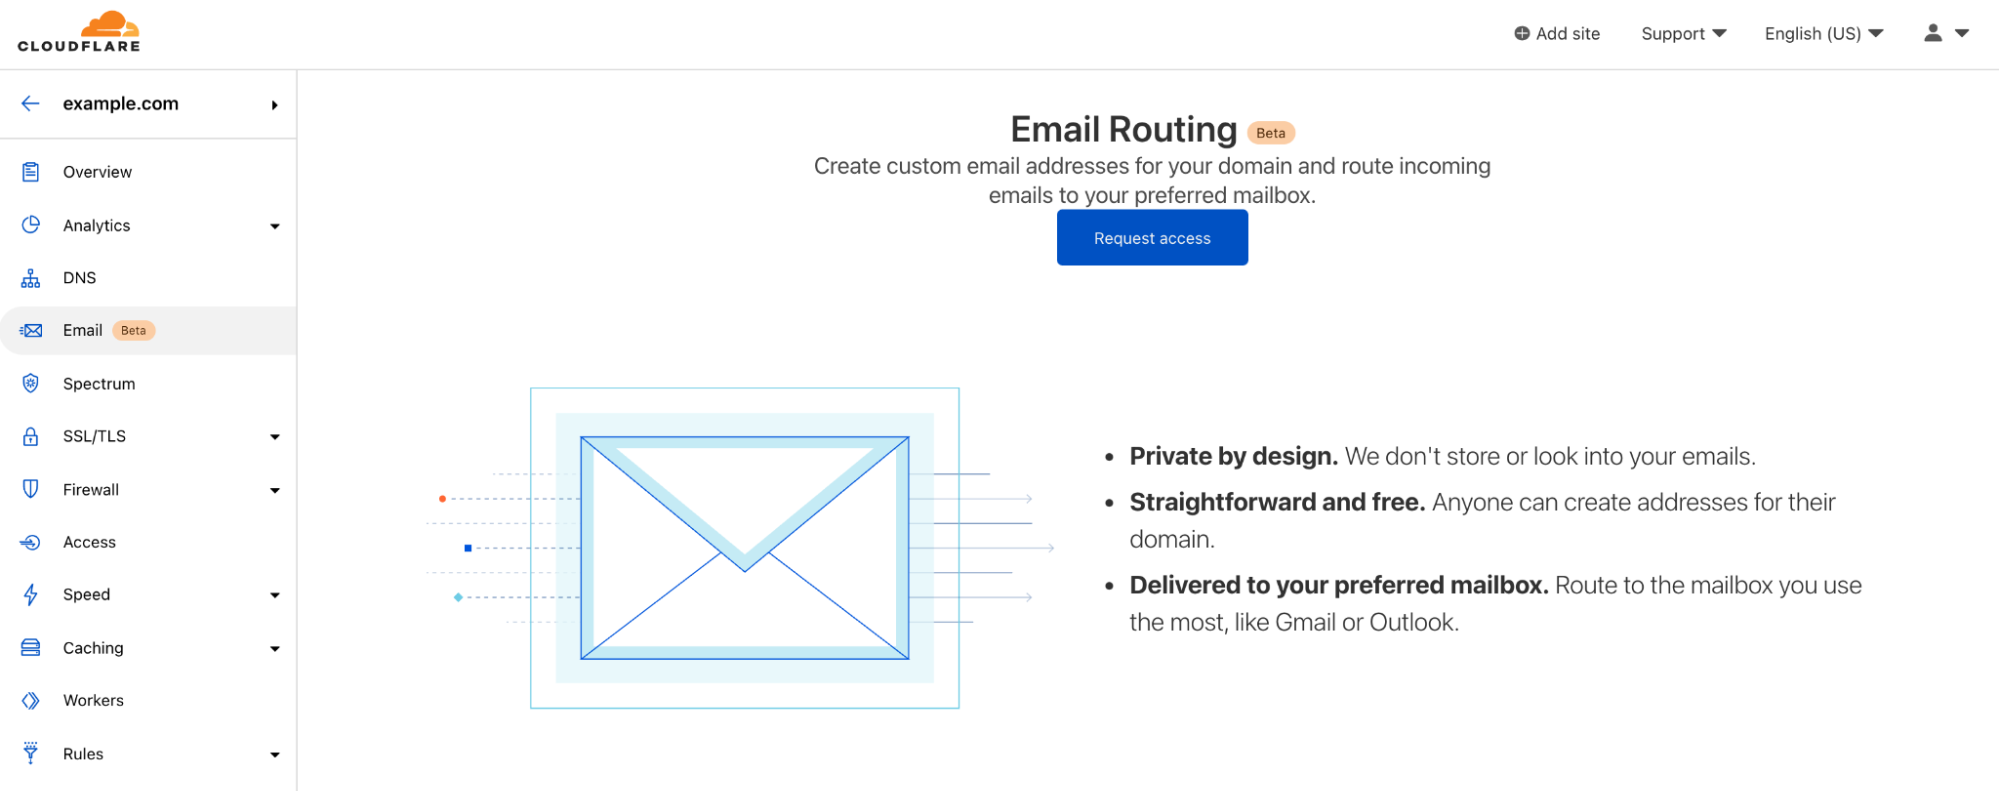 Clouflare открыла доступ к маршрутизации электронной почты для всех желающих